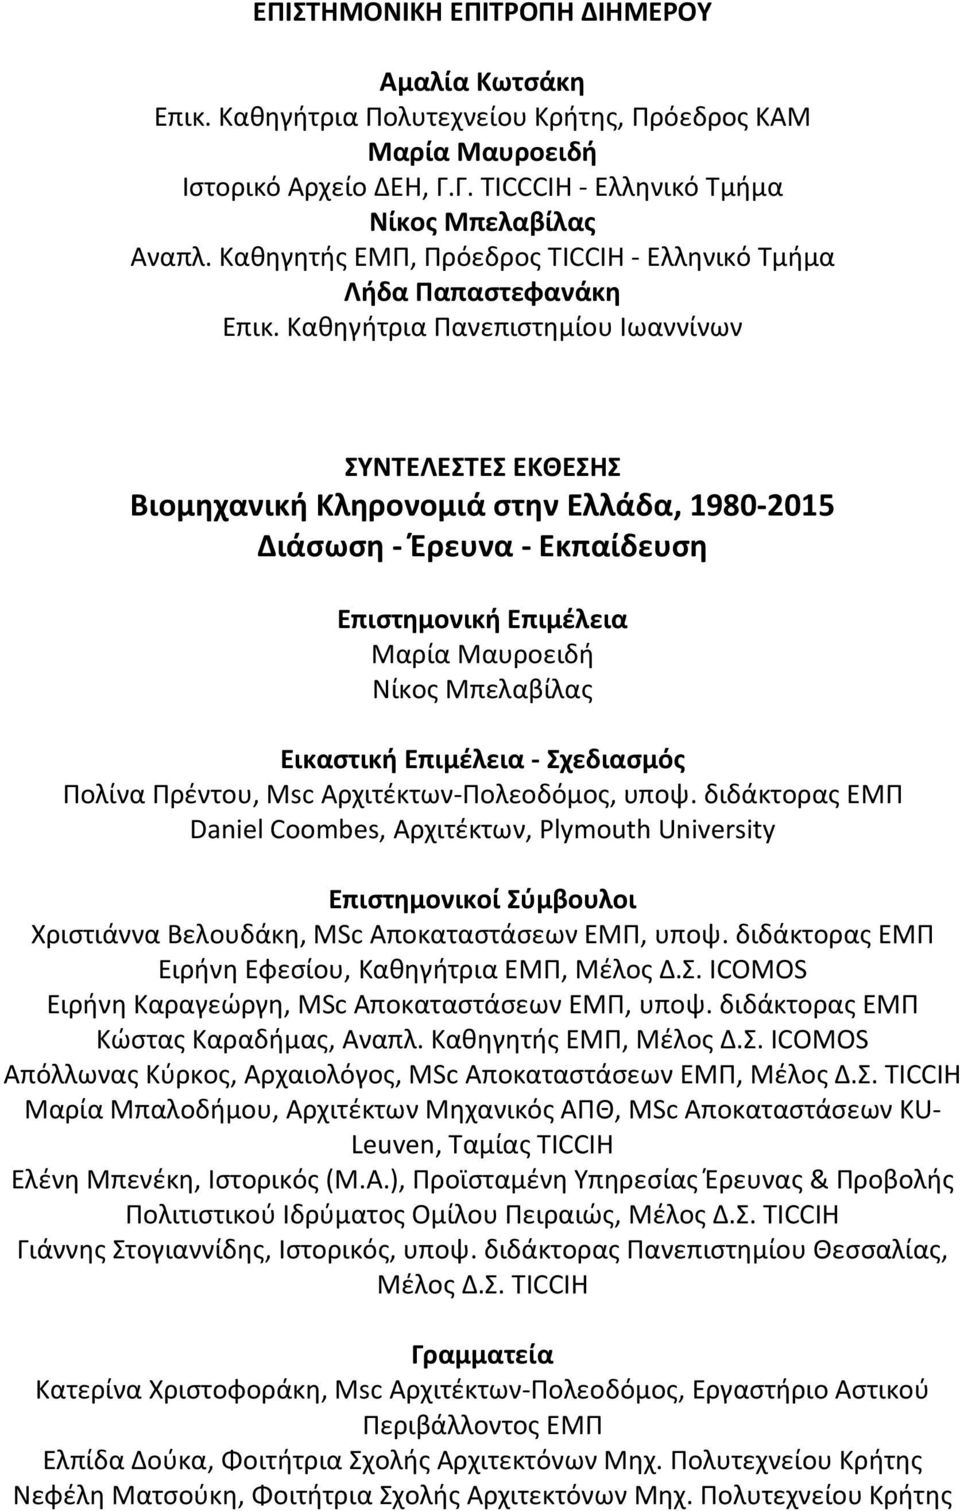 Καθηγήτρια Πανεπιστημίου Ιωαννίνων ΣΥΝΤΕΛΕΣΤΕΣ ΕΚΘΕΣΗΣ Βιομηχανική Κληρονομιά στην Ελλάδα, 1980-2015 Διάσωση - Έρευνα - Εκπαίδευση Επιστημονική Επιμέλεια Μαρία Μαυροειδή Νίκος Μπελαβίλας Εικαστική